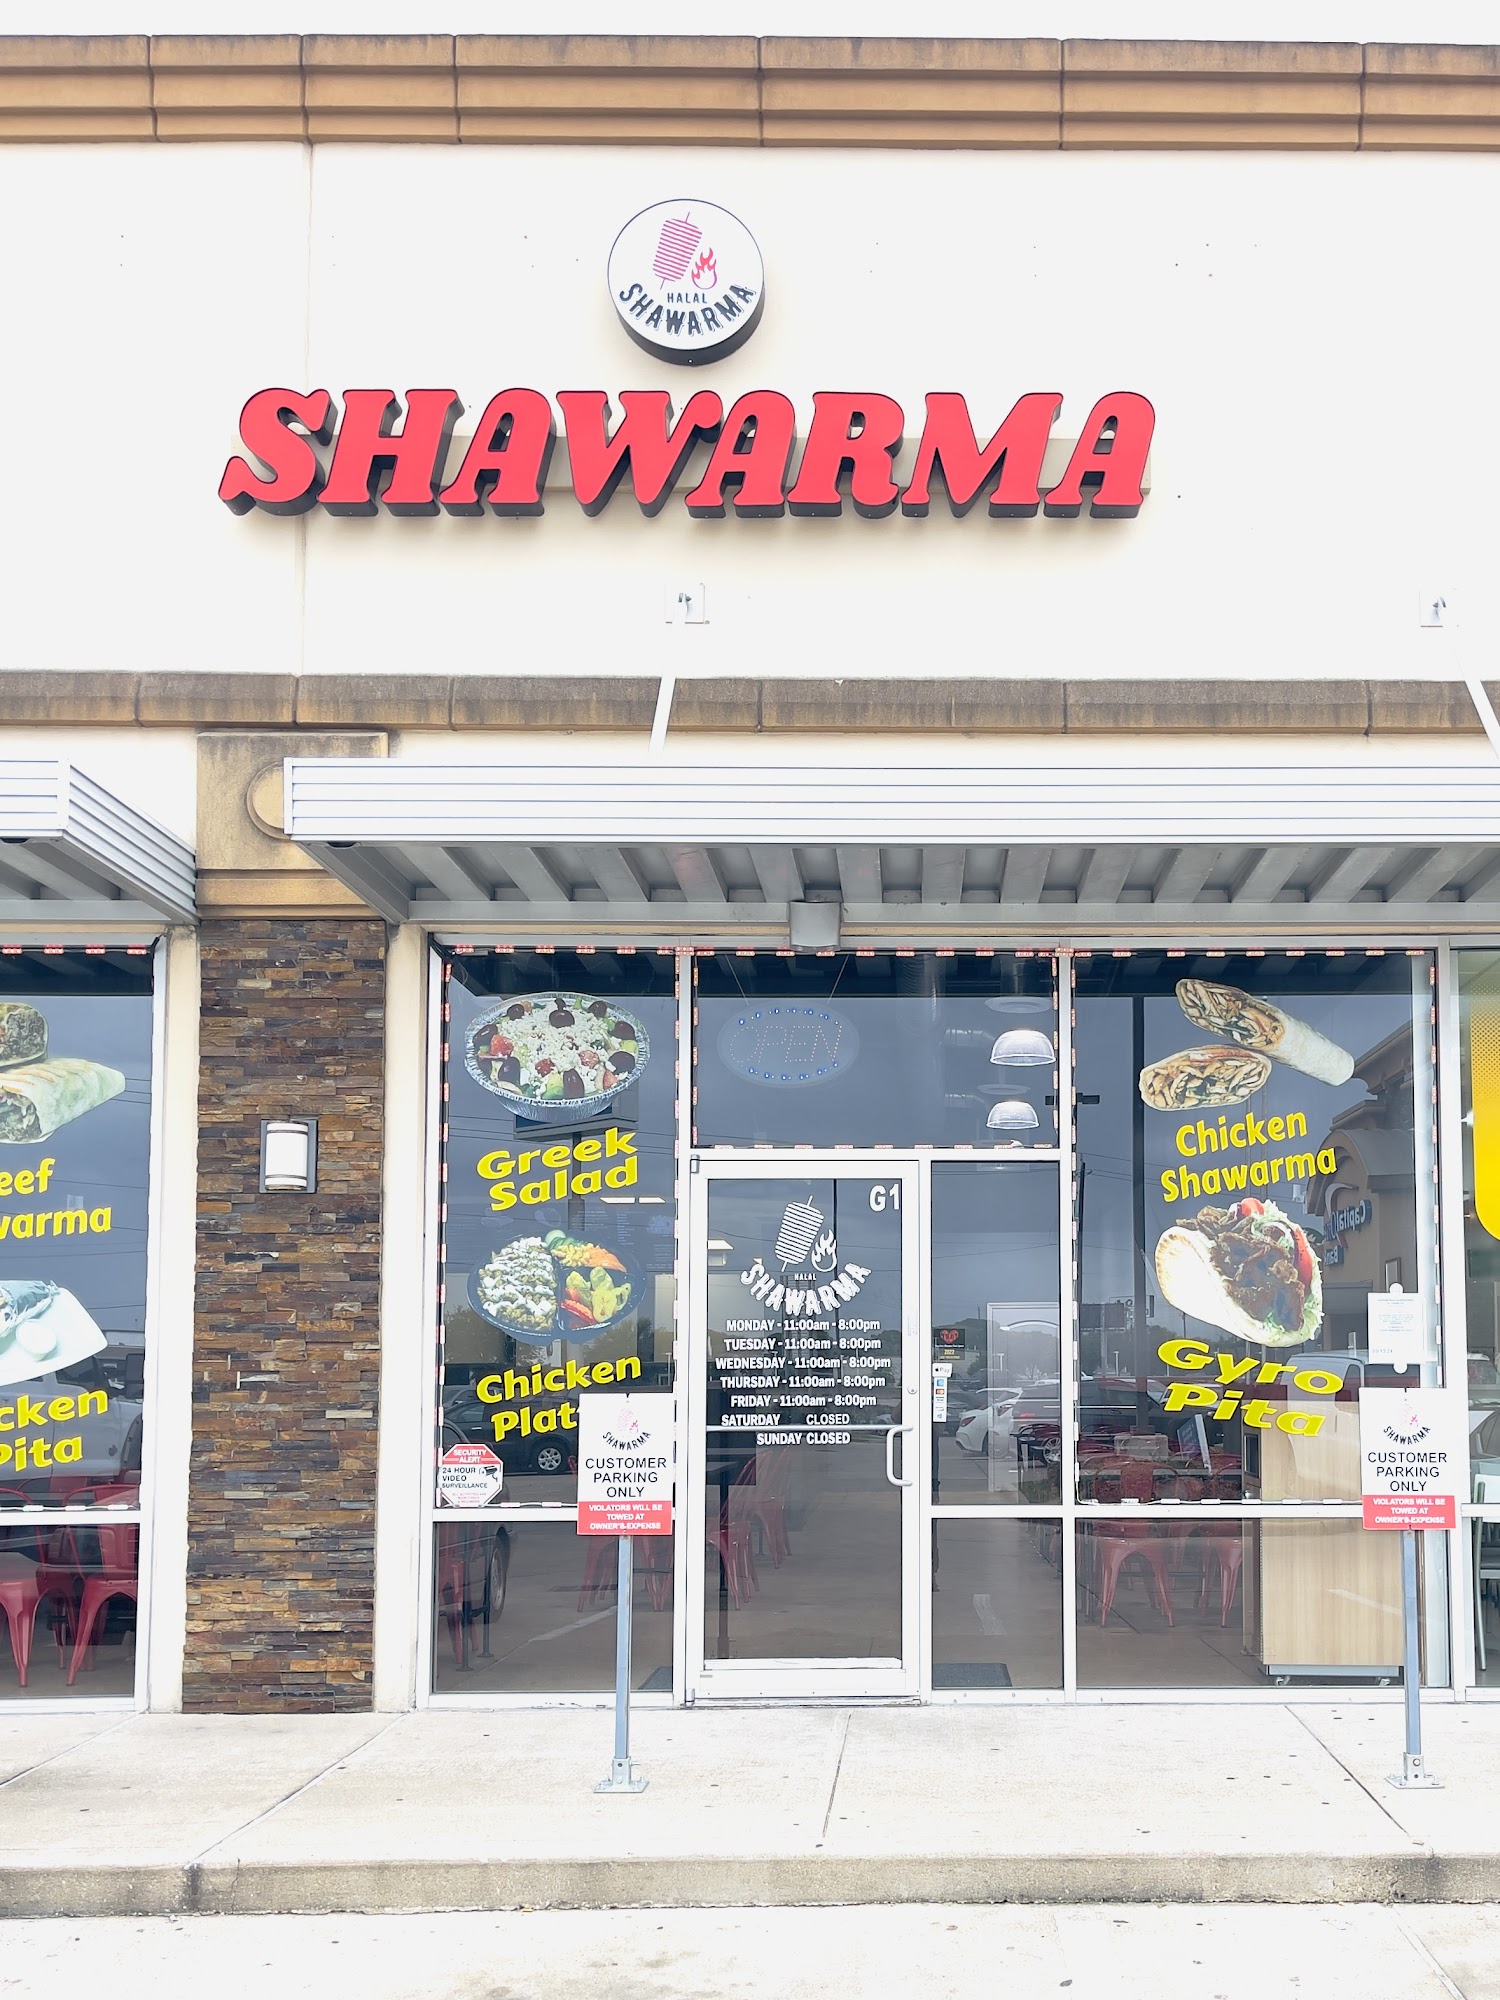 Halal Shawarma